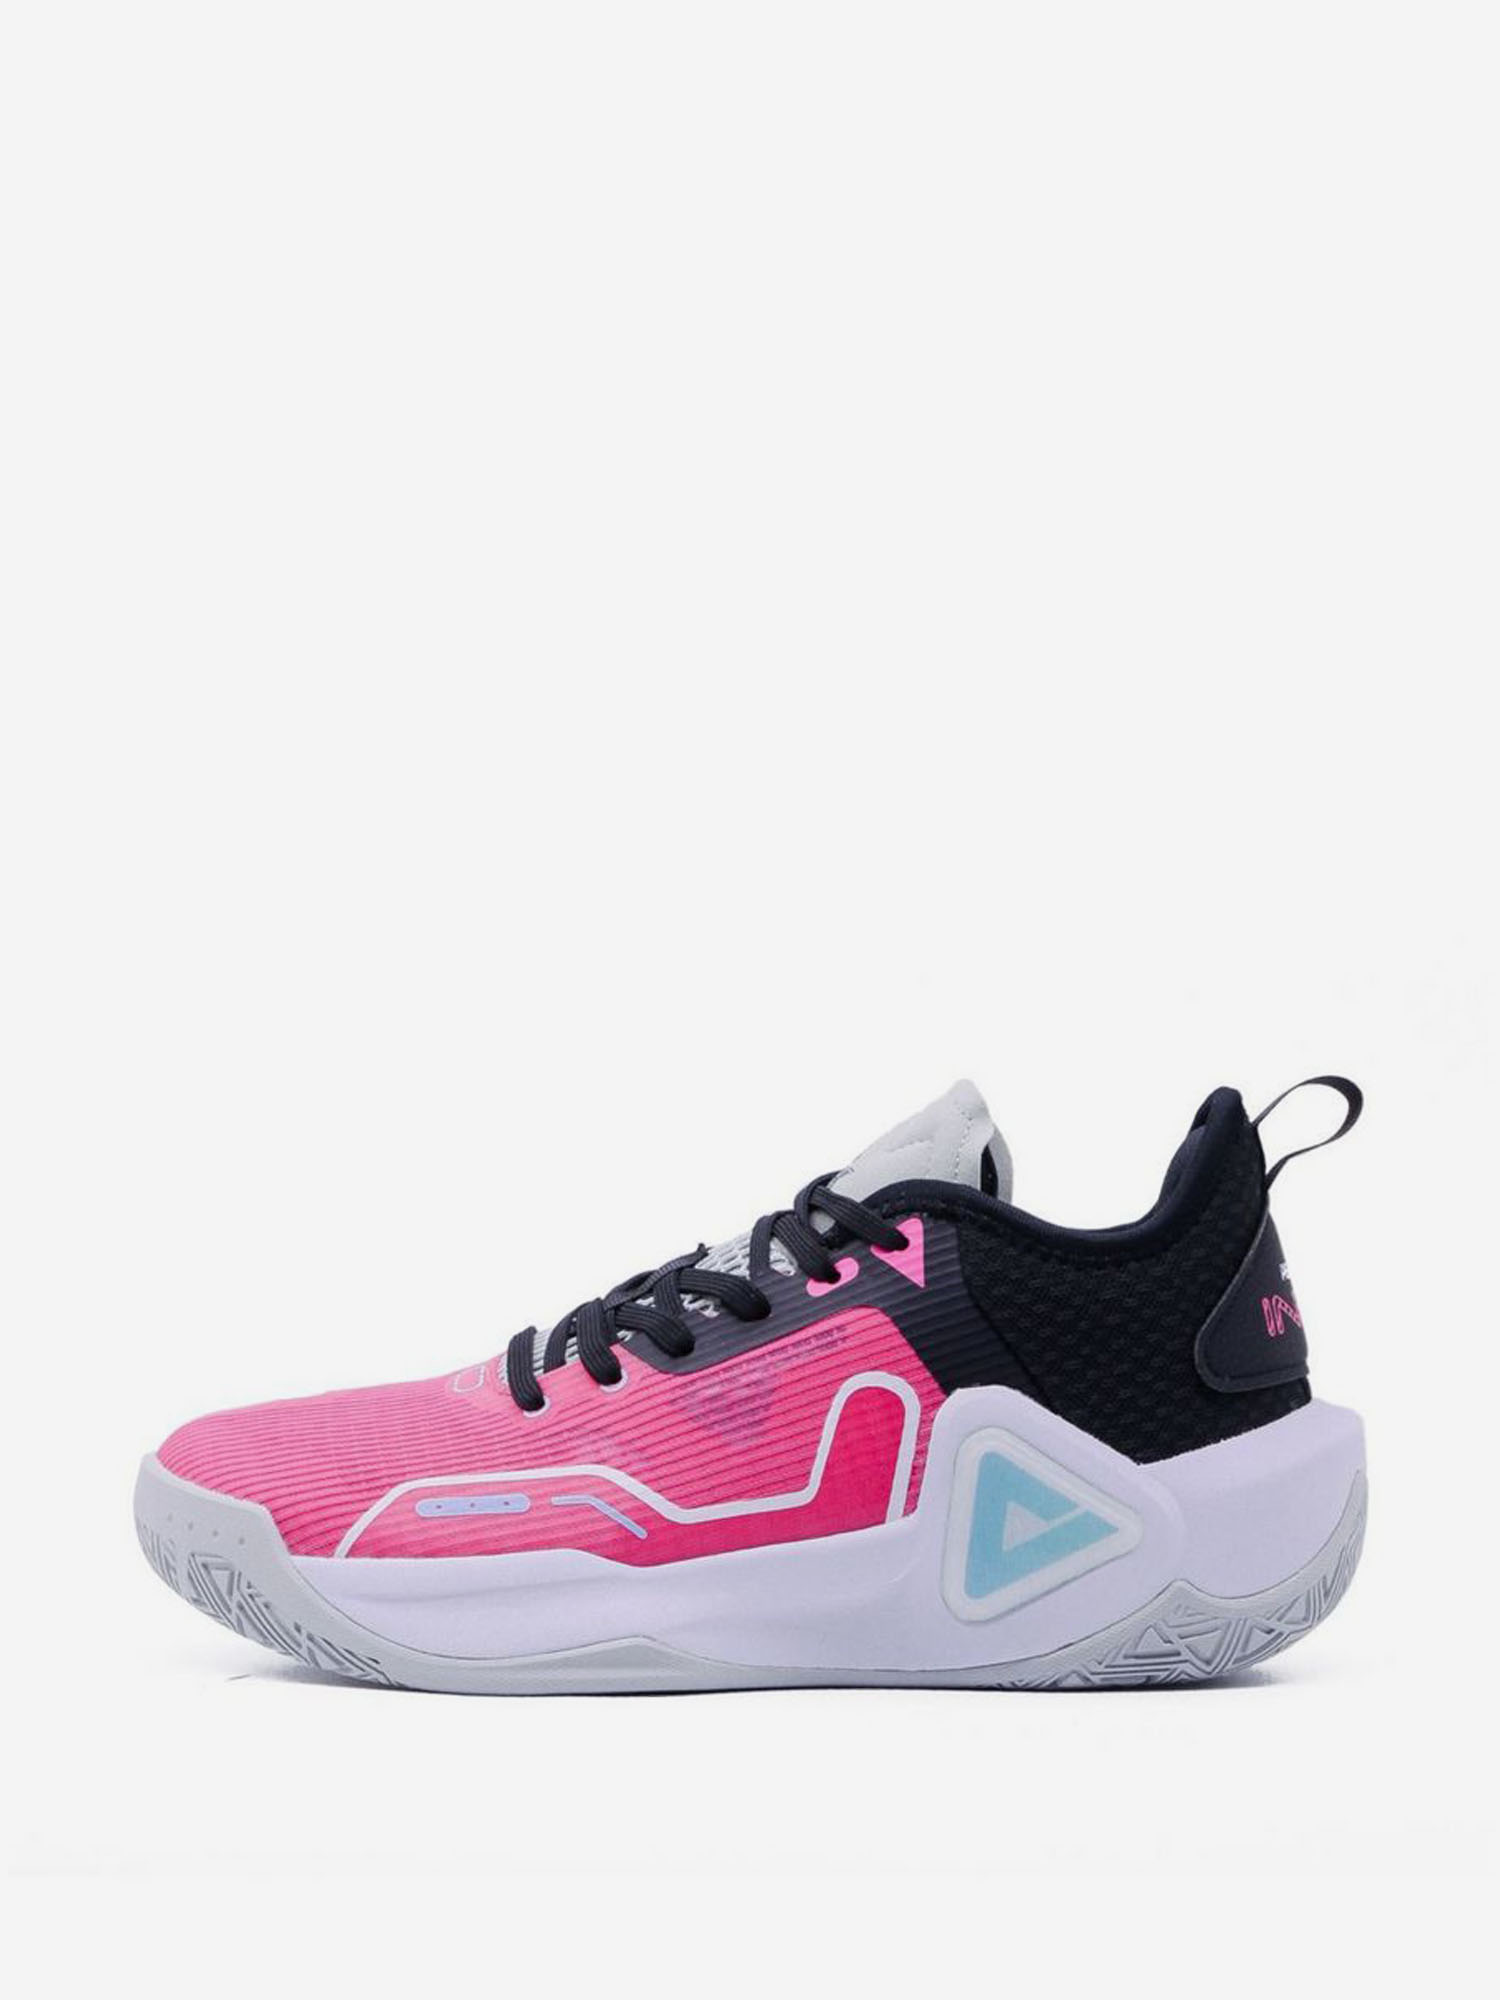 Баскетбольные кроссовки Peak SonicBoom, Розовый